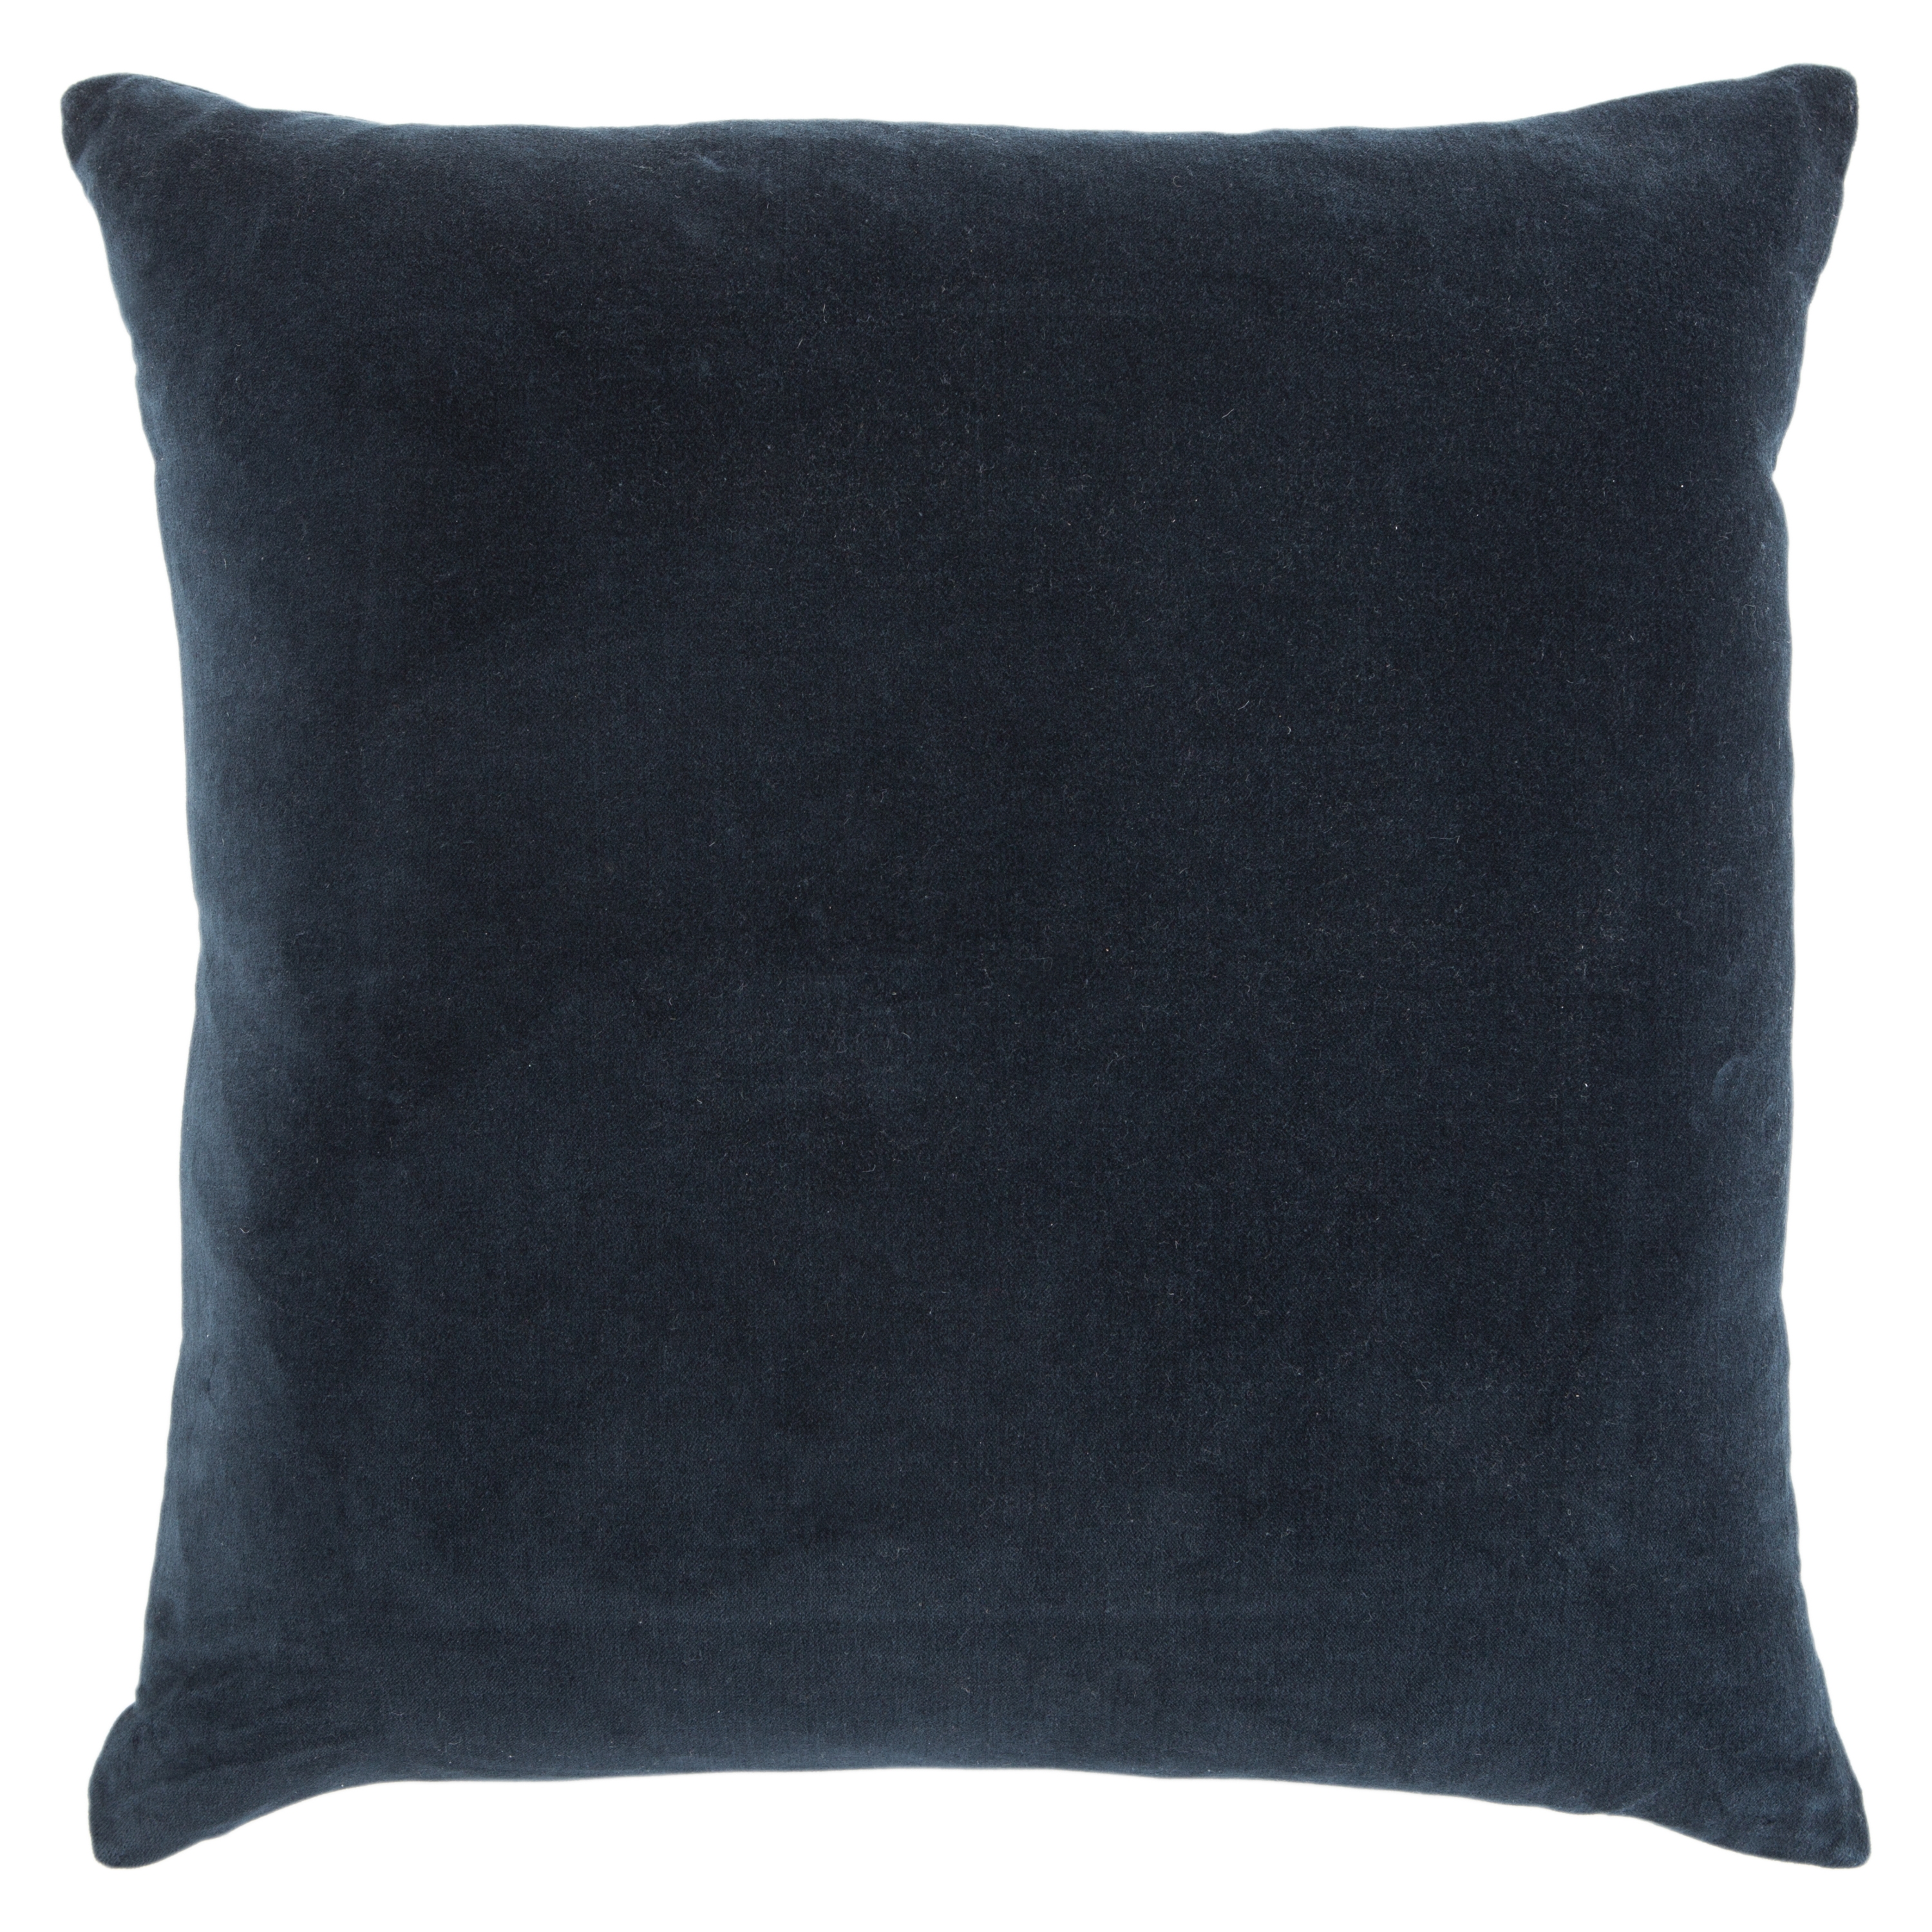 Design (US) Navy 22"X22" Pillow Indoor - Image 1